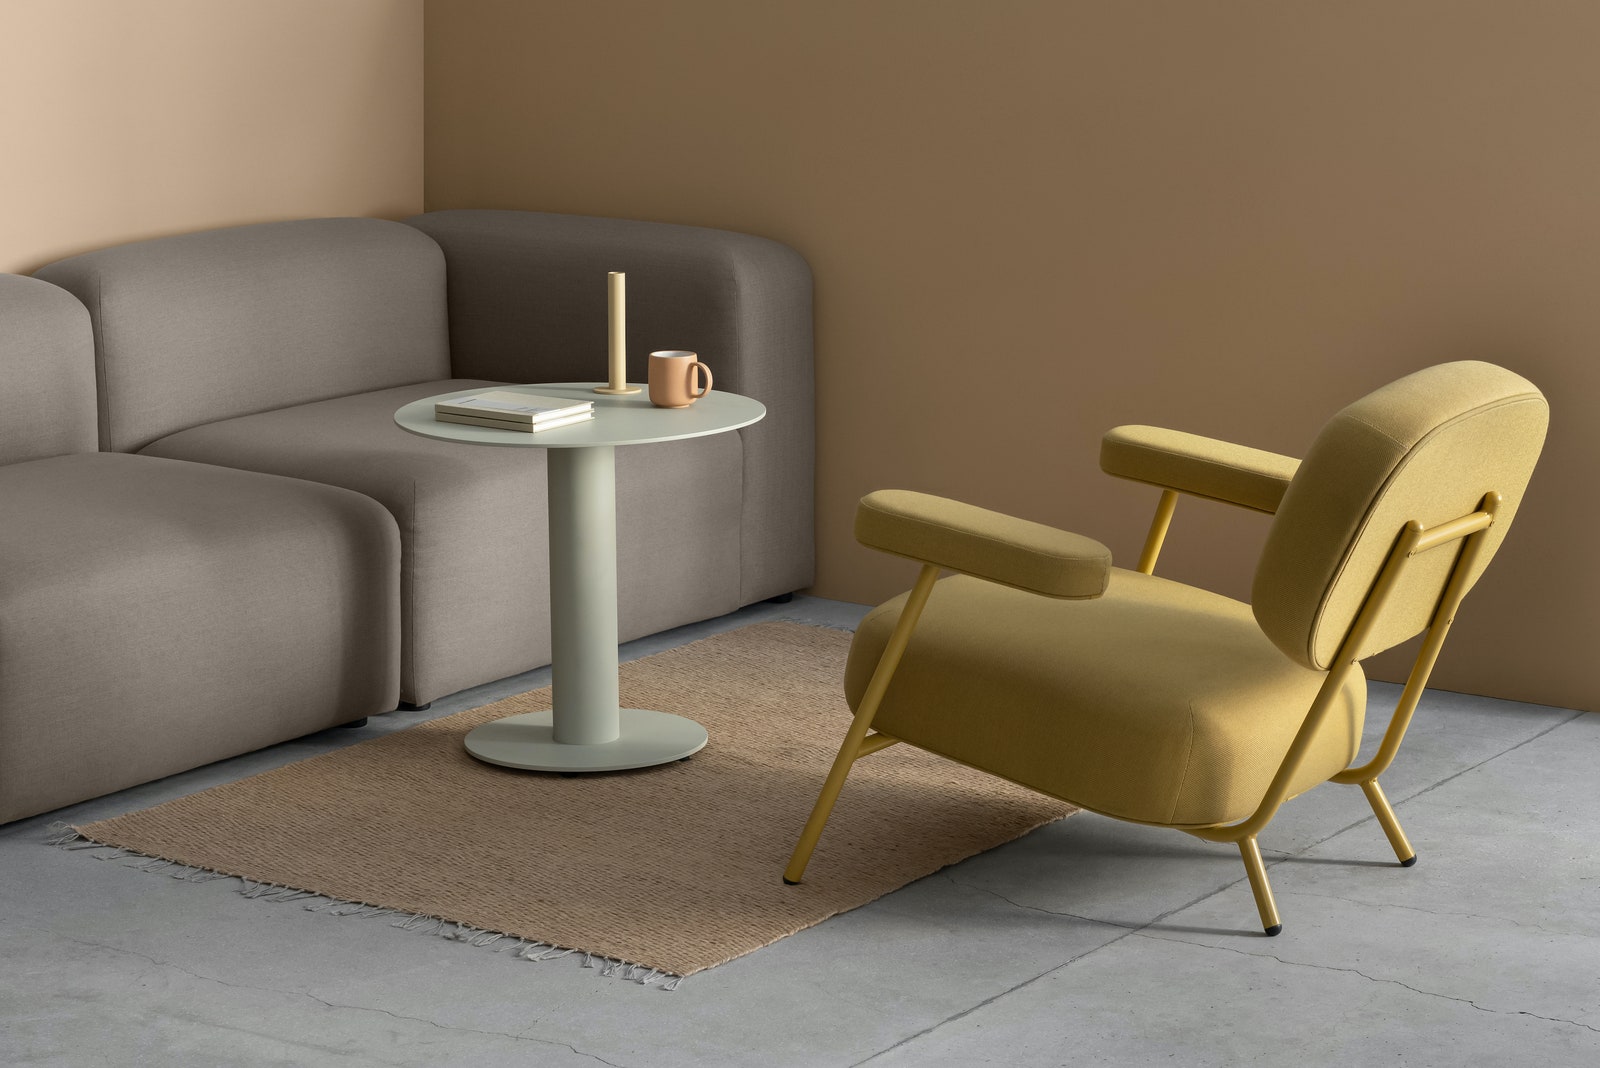 Кресло “Каеф” журнальный столик “Мегастолик” и модульный диван “Чилл” все Delo Design.